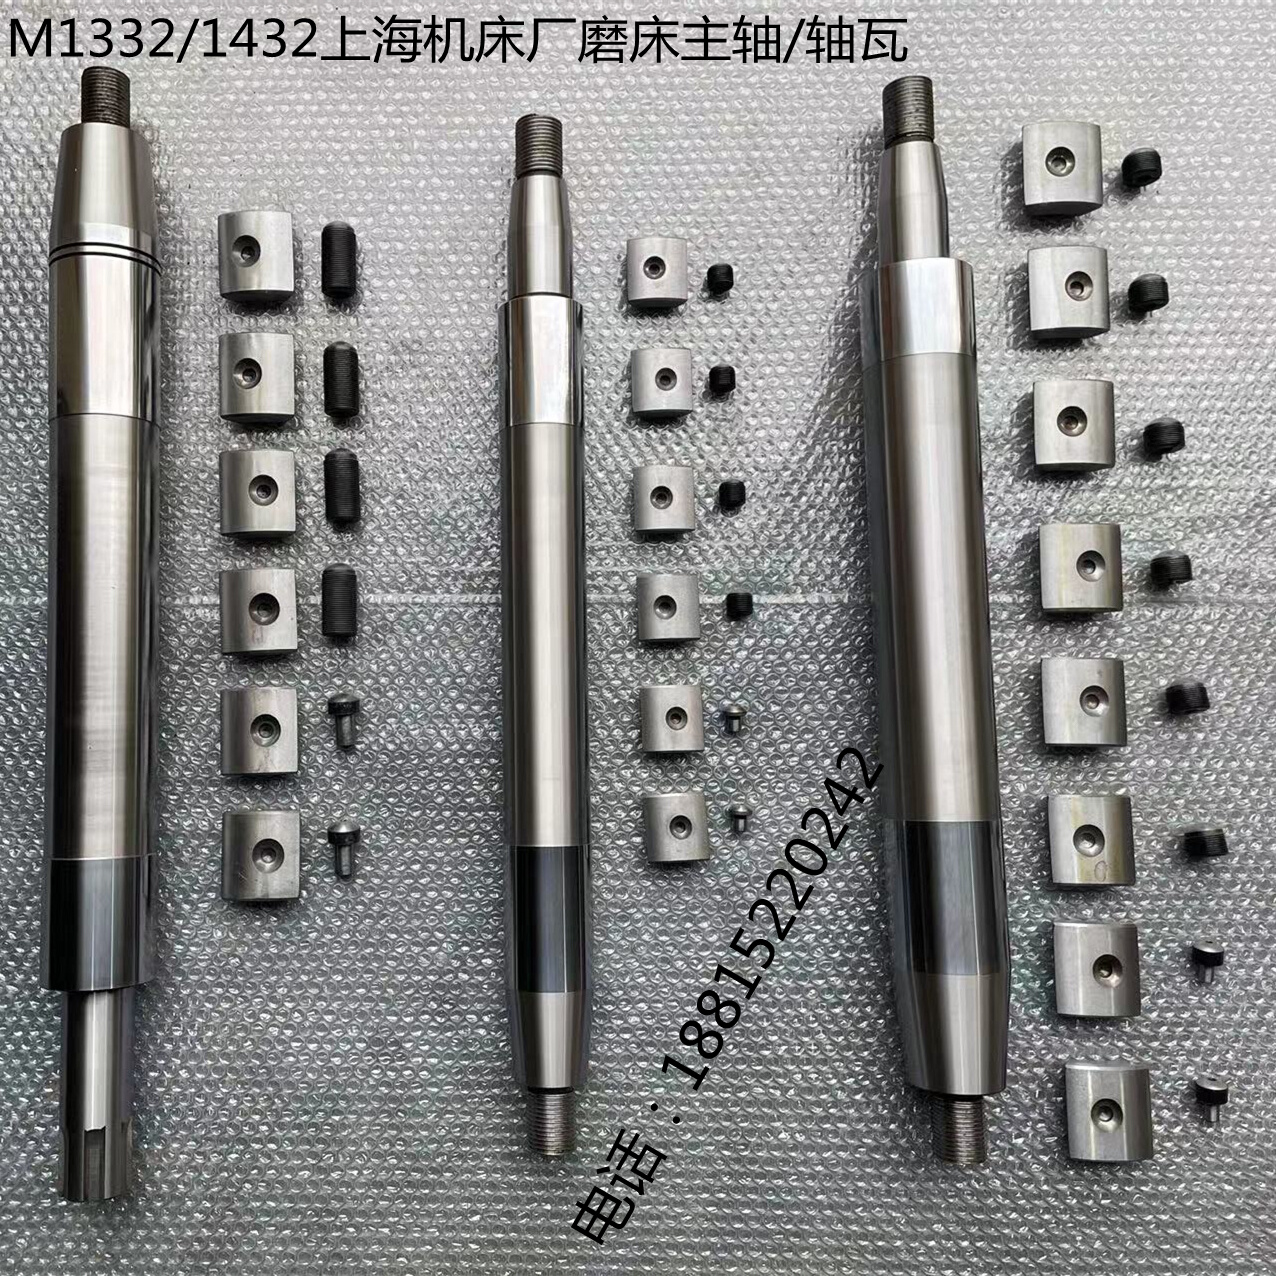 全新M1332/M1432上海外圆磨床主轴 轴瓦采用优质钢材出厂硬度检测